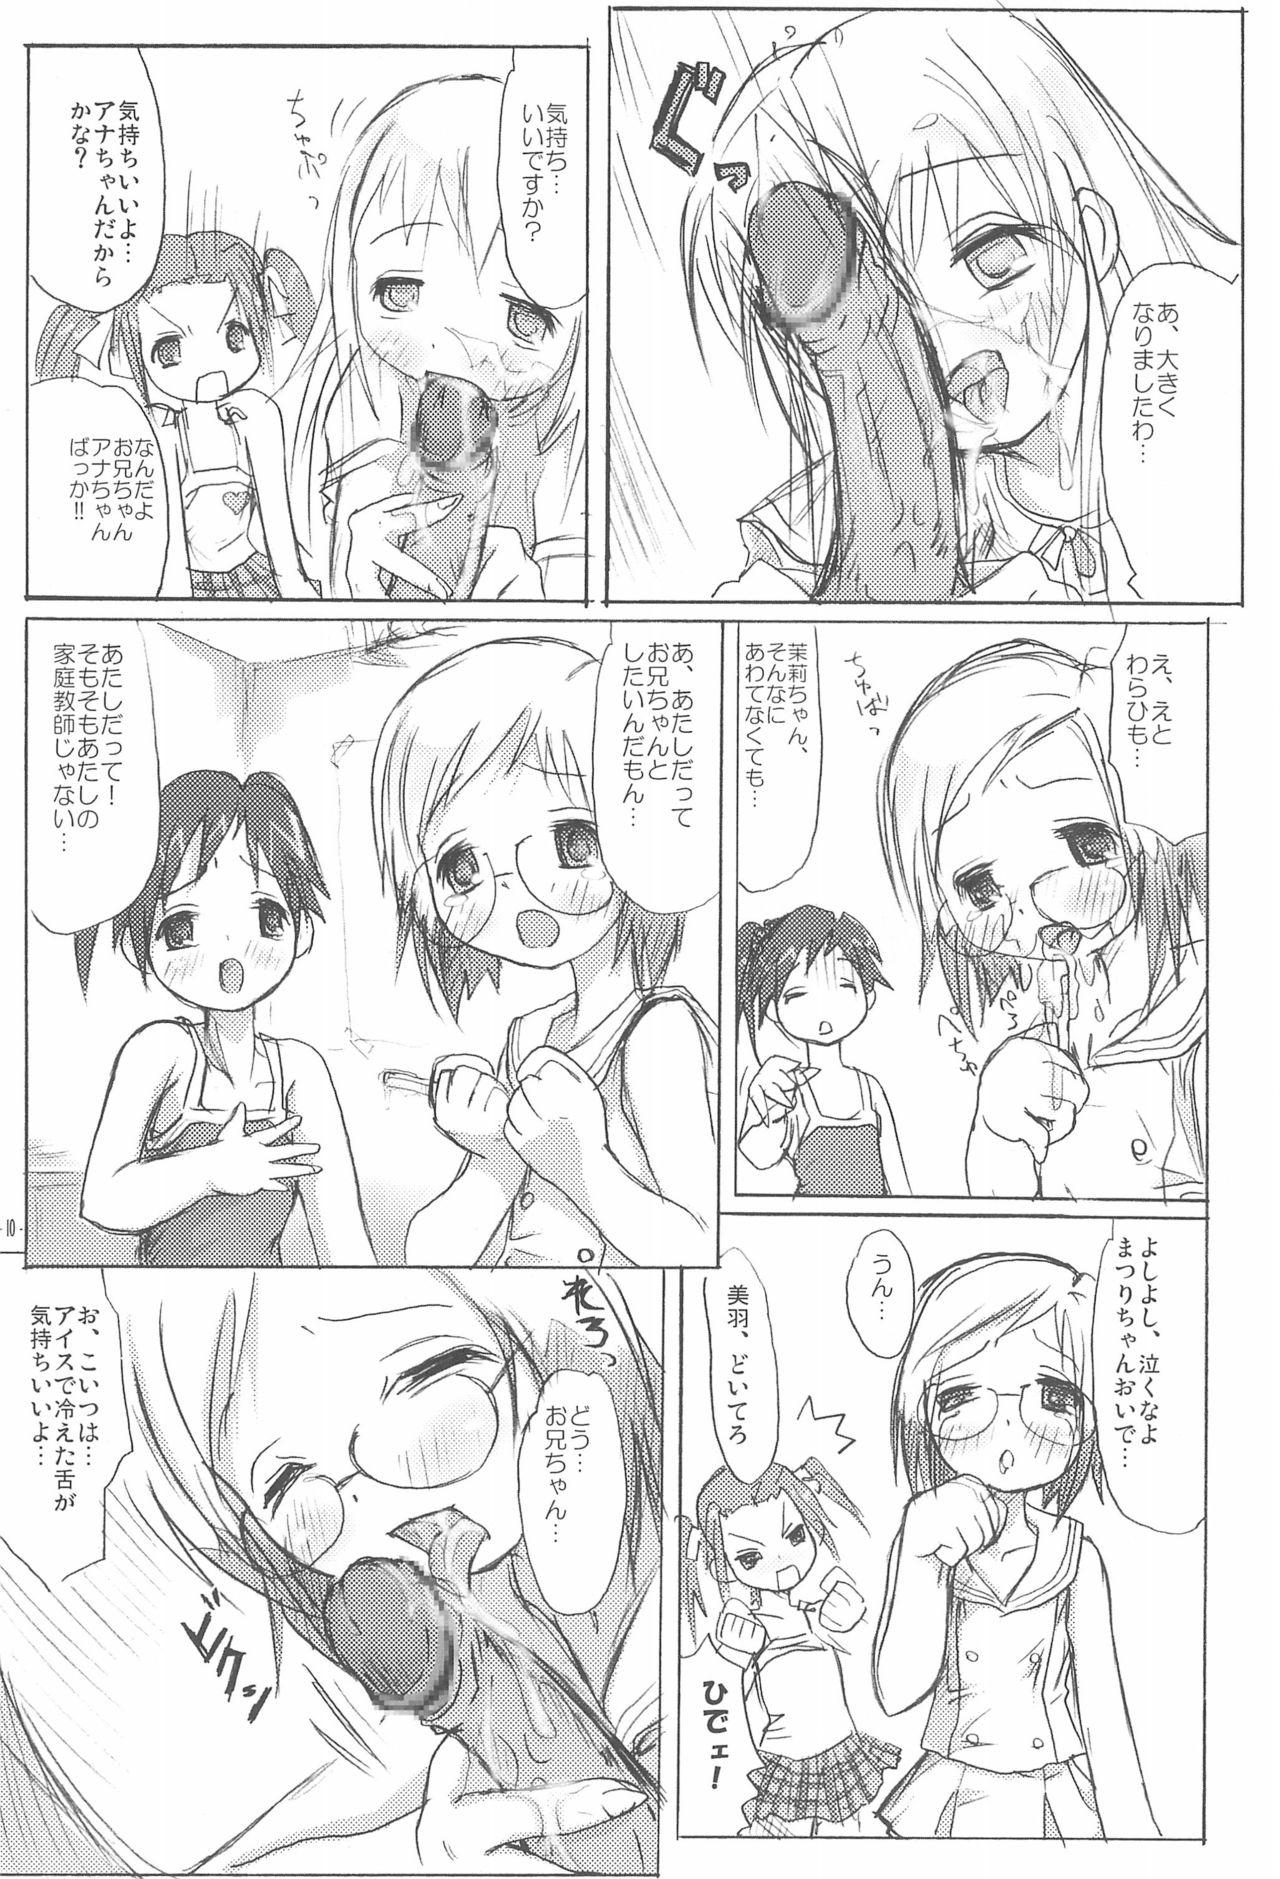 Women Sucking Ichigo Syrup. - Ichigo mashimaro Tranny Porn - Page 12